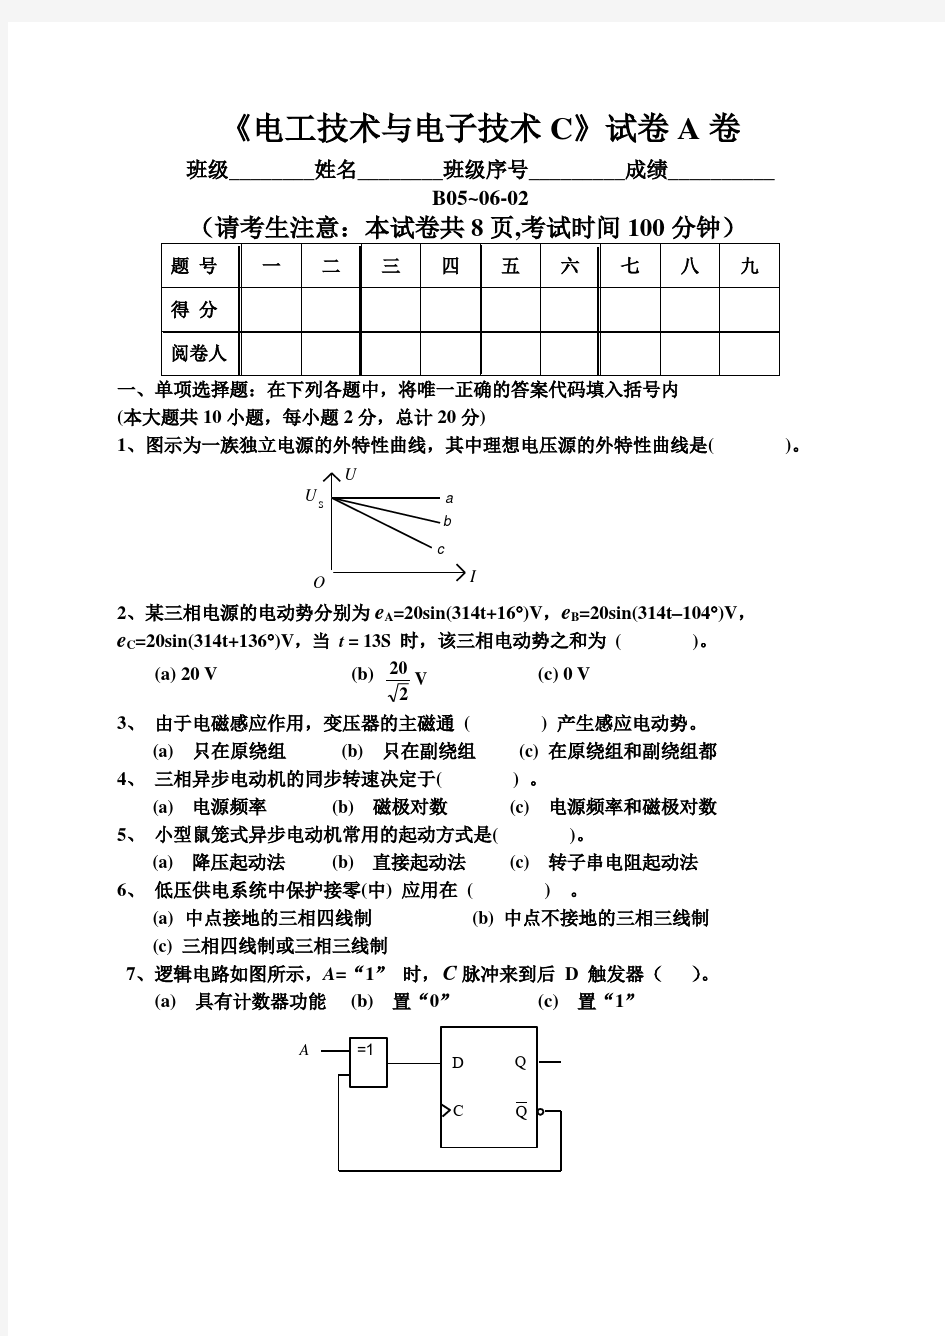 中国矿业大学电工期末考试试卷六 (1)